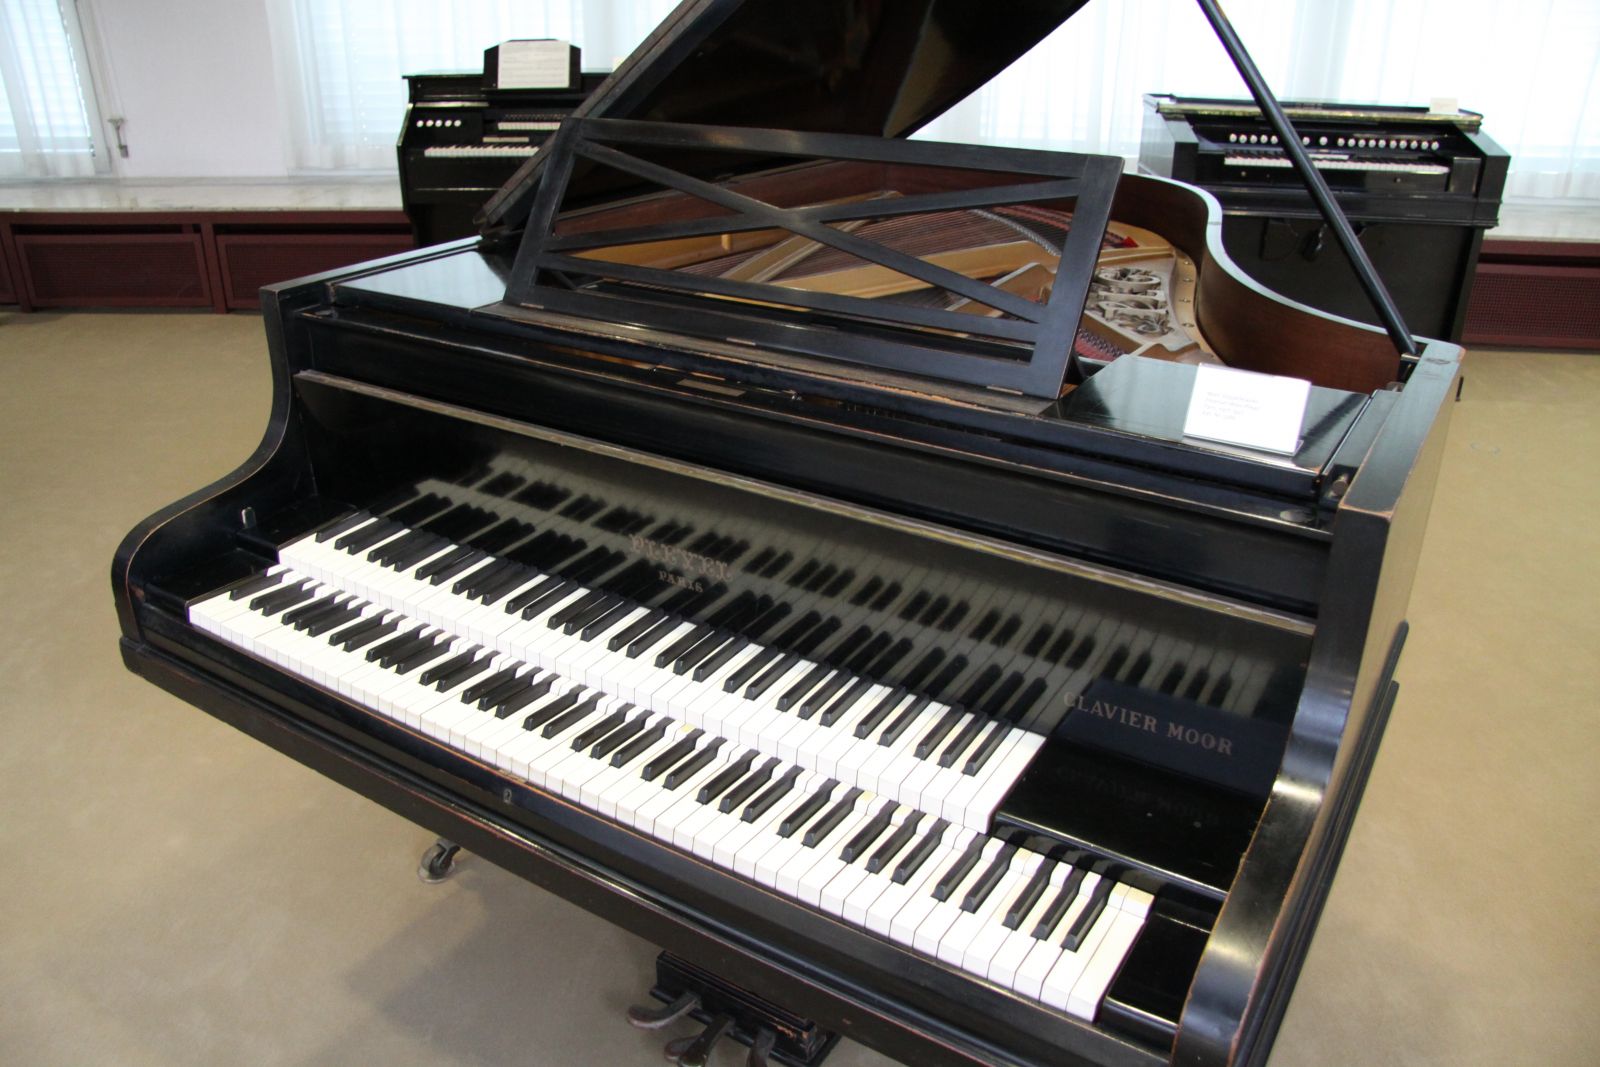 Un double clavier du piano à queue… de quoi s’agit-il?